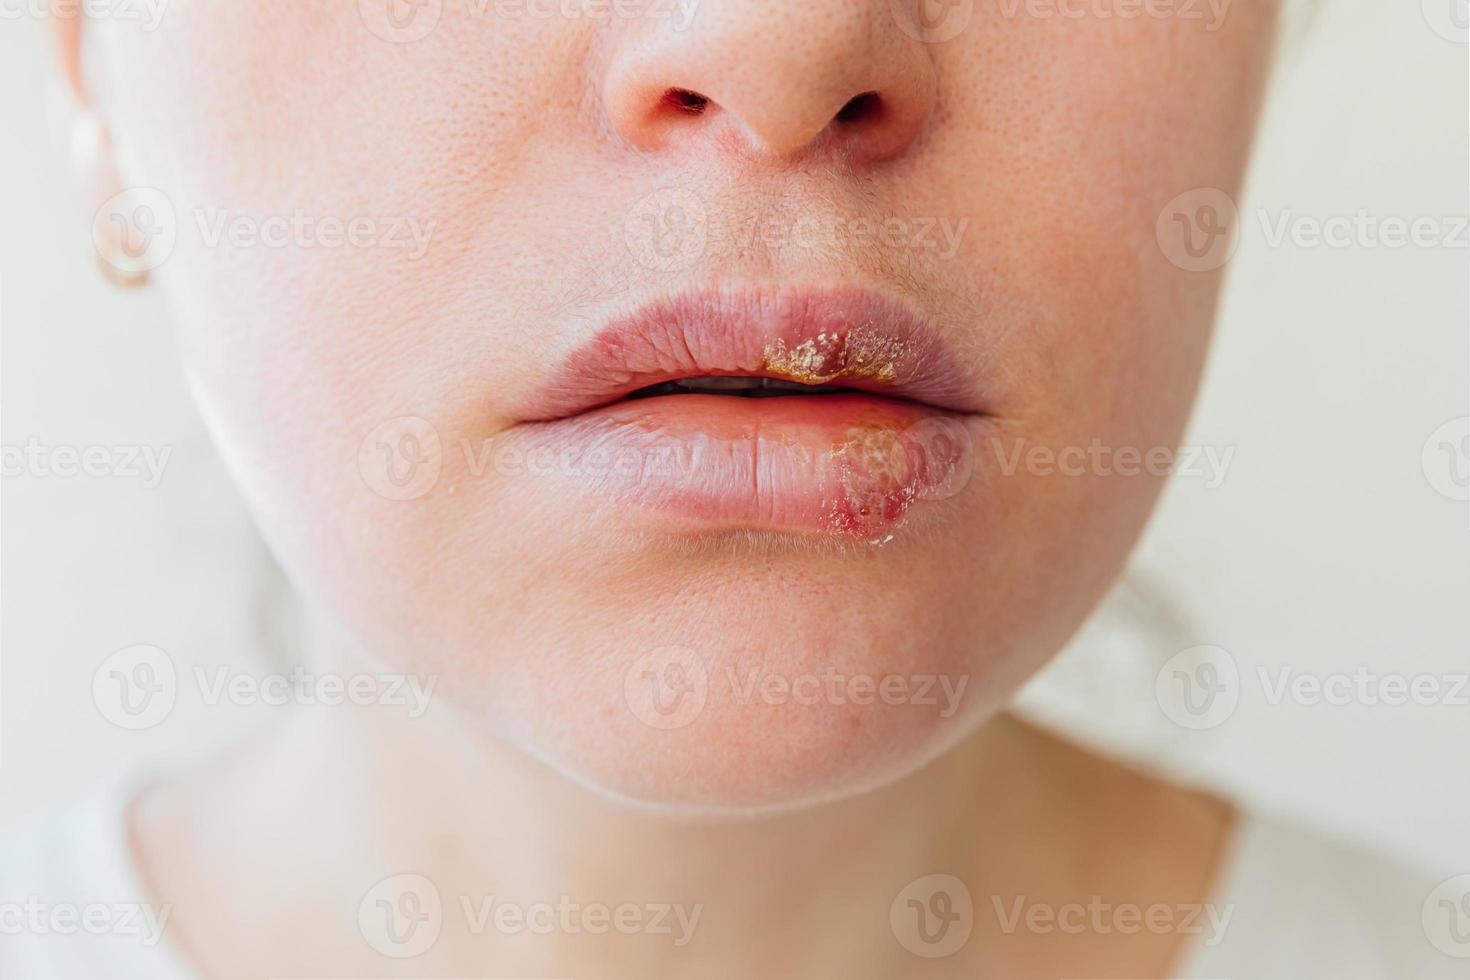 primer plano de los labios de la niña afectados por el herpes. tratamiento de la infección por herpes y el virus. parte de la cara de la mujer joven, labios con herpes afectados. concepto de dermatología de belleza. foto